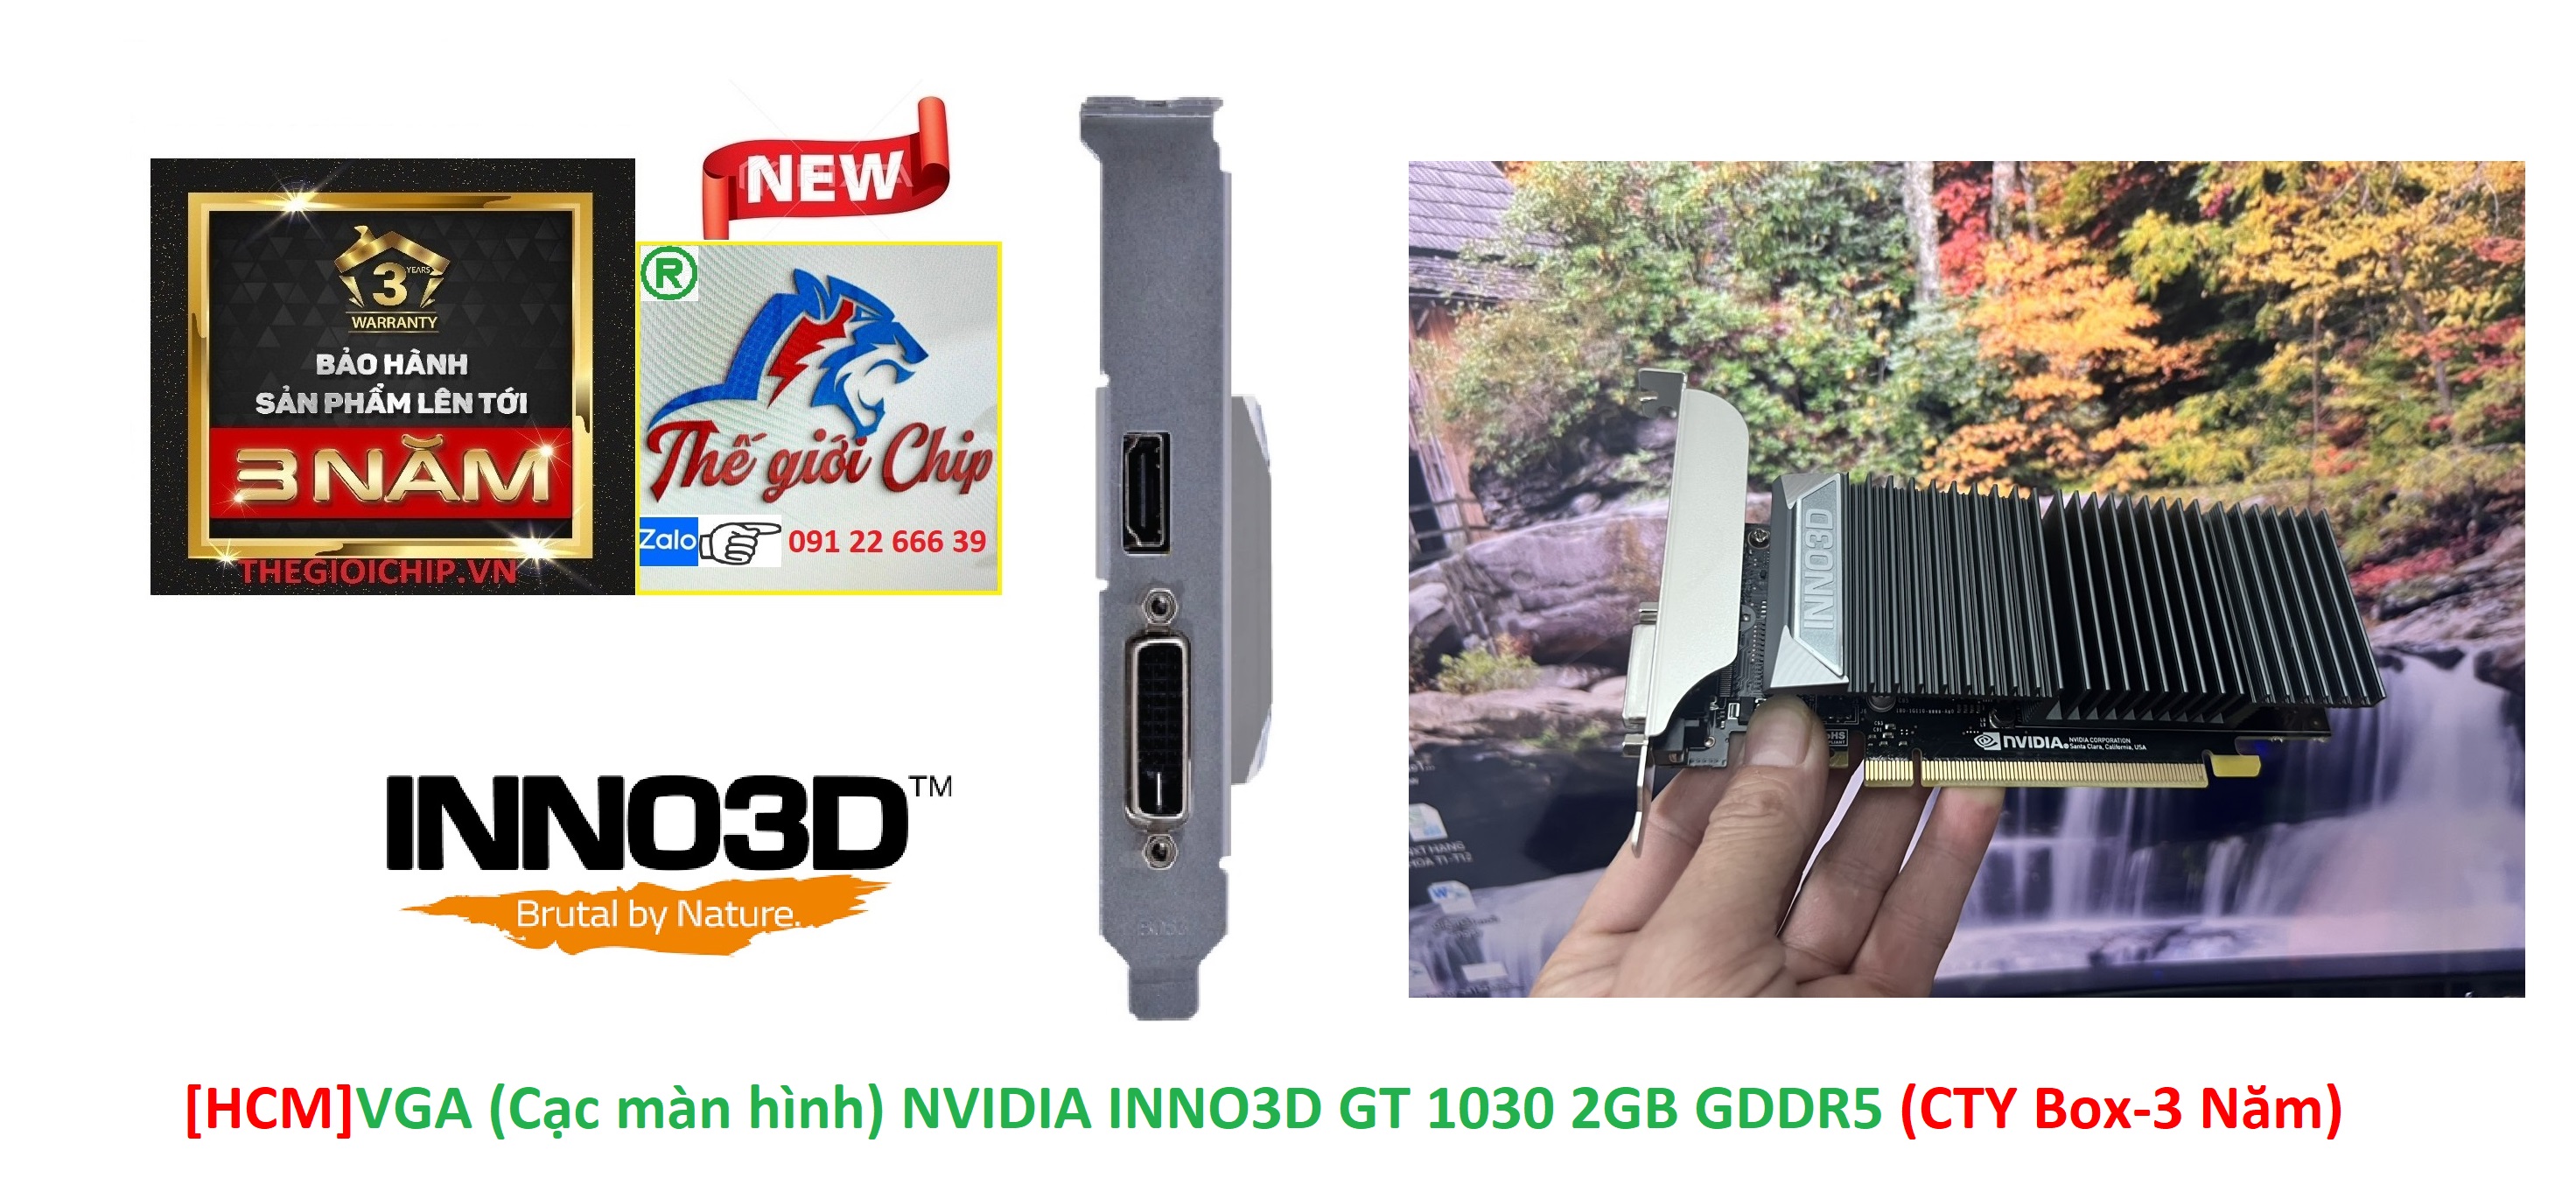 HCMVGA Cạc màn hình INNO3D GT 1030 2GB GDDR5 CTY Box-3 Năm